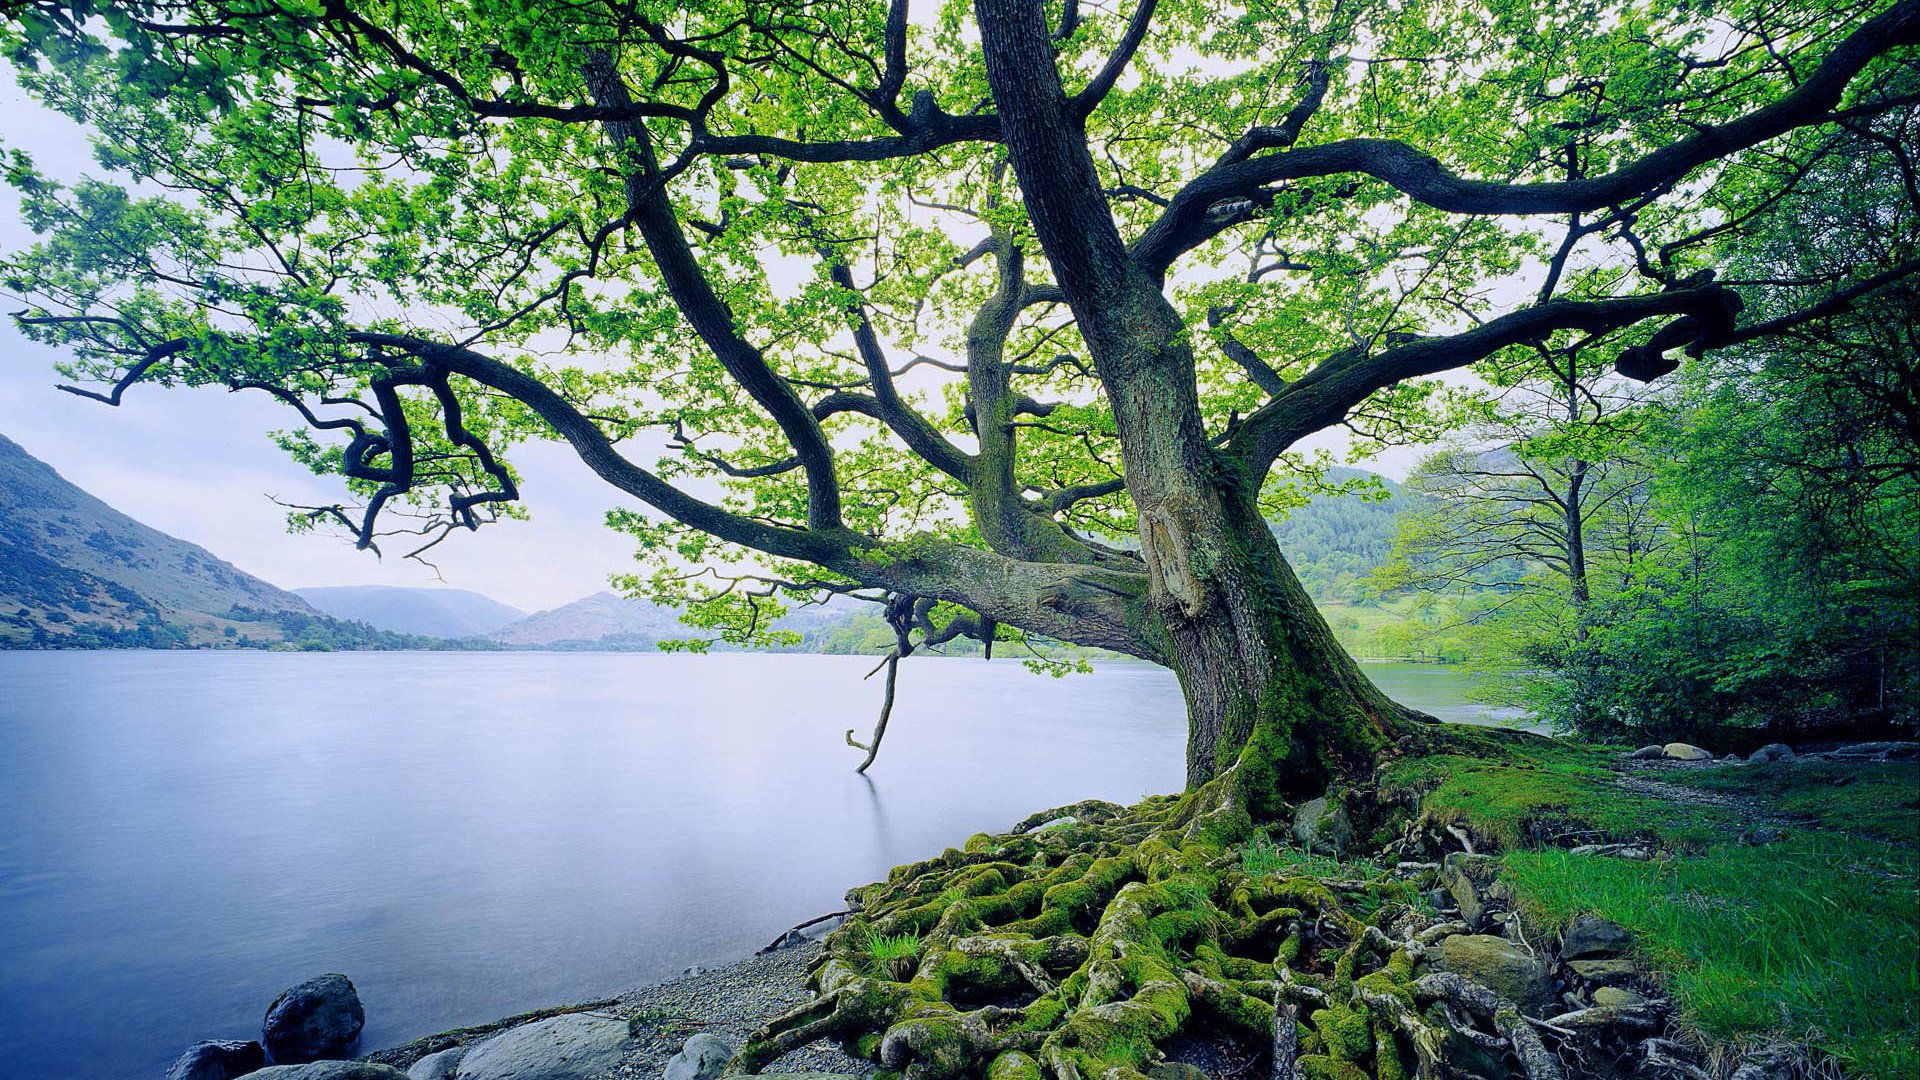 عکس استوک تماشایی درخت کنار دریاچه وسیع و سرد با کیفیت HD